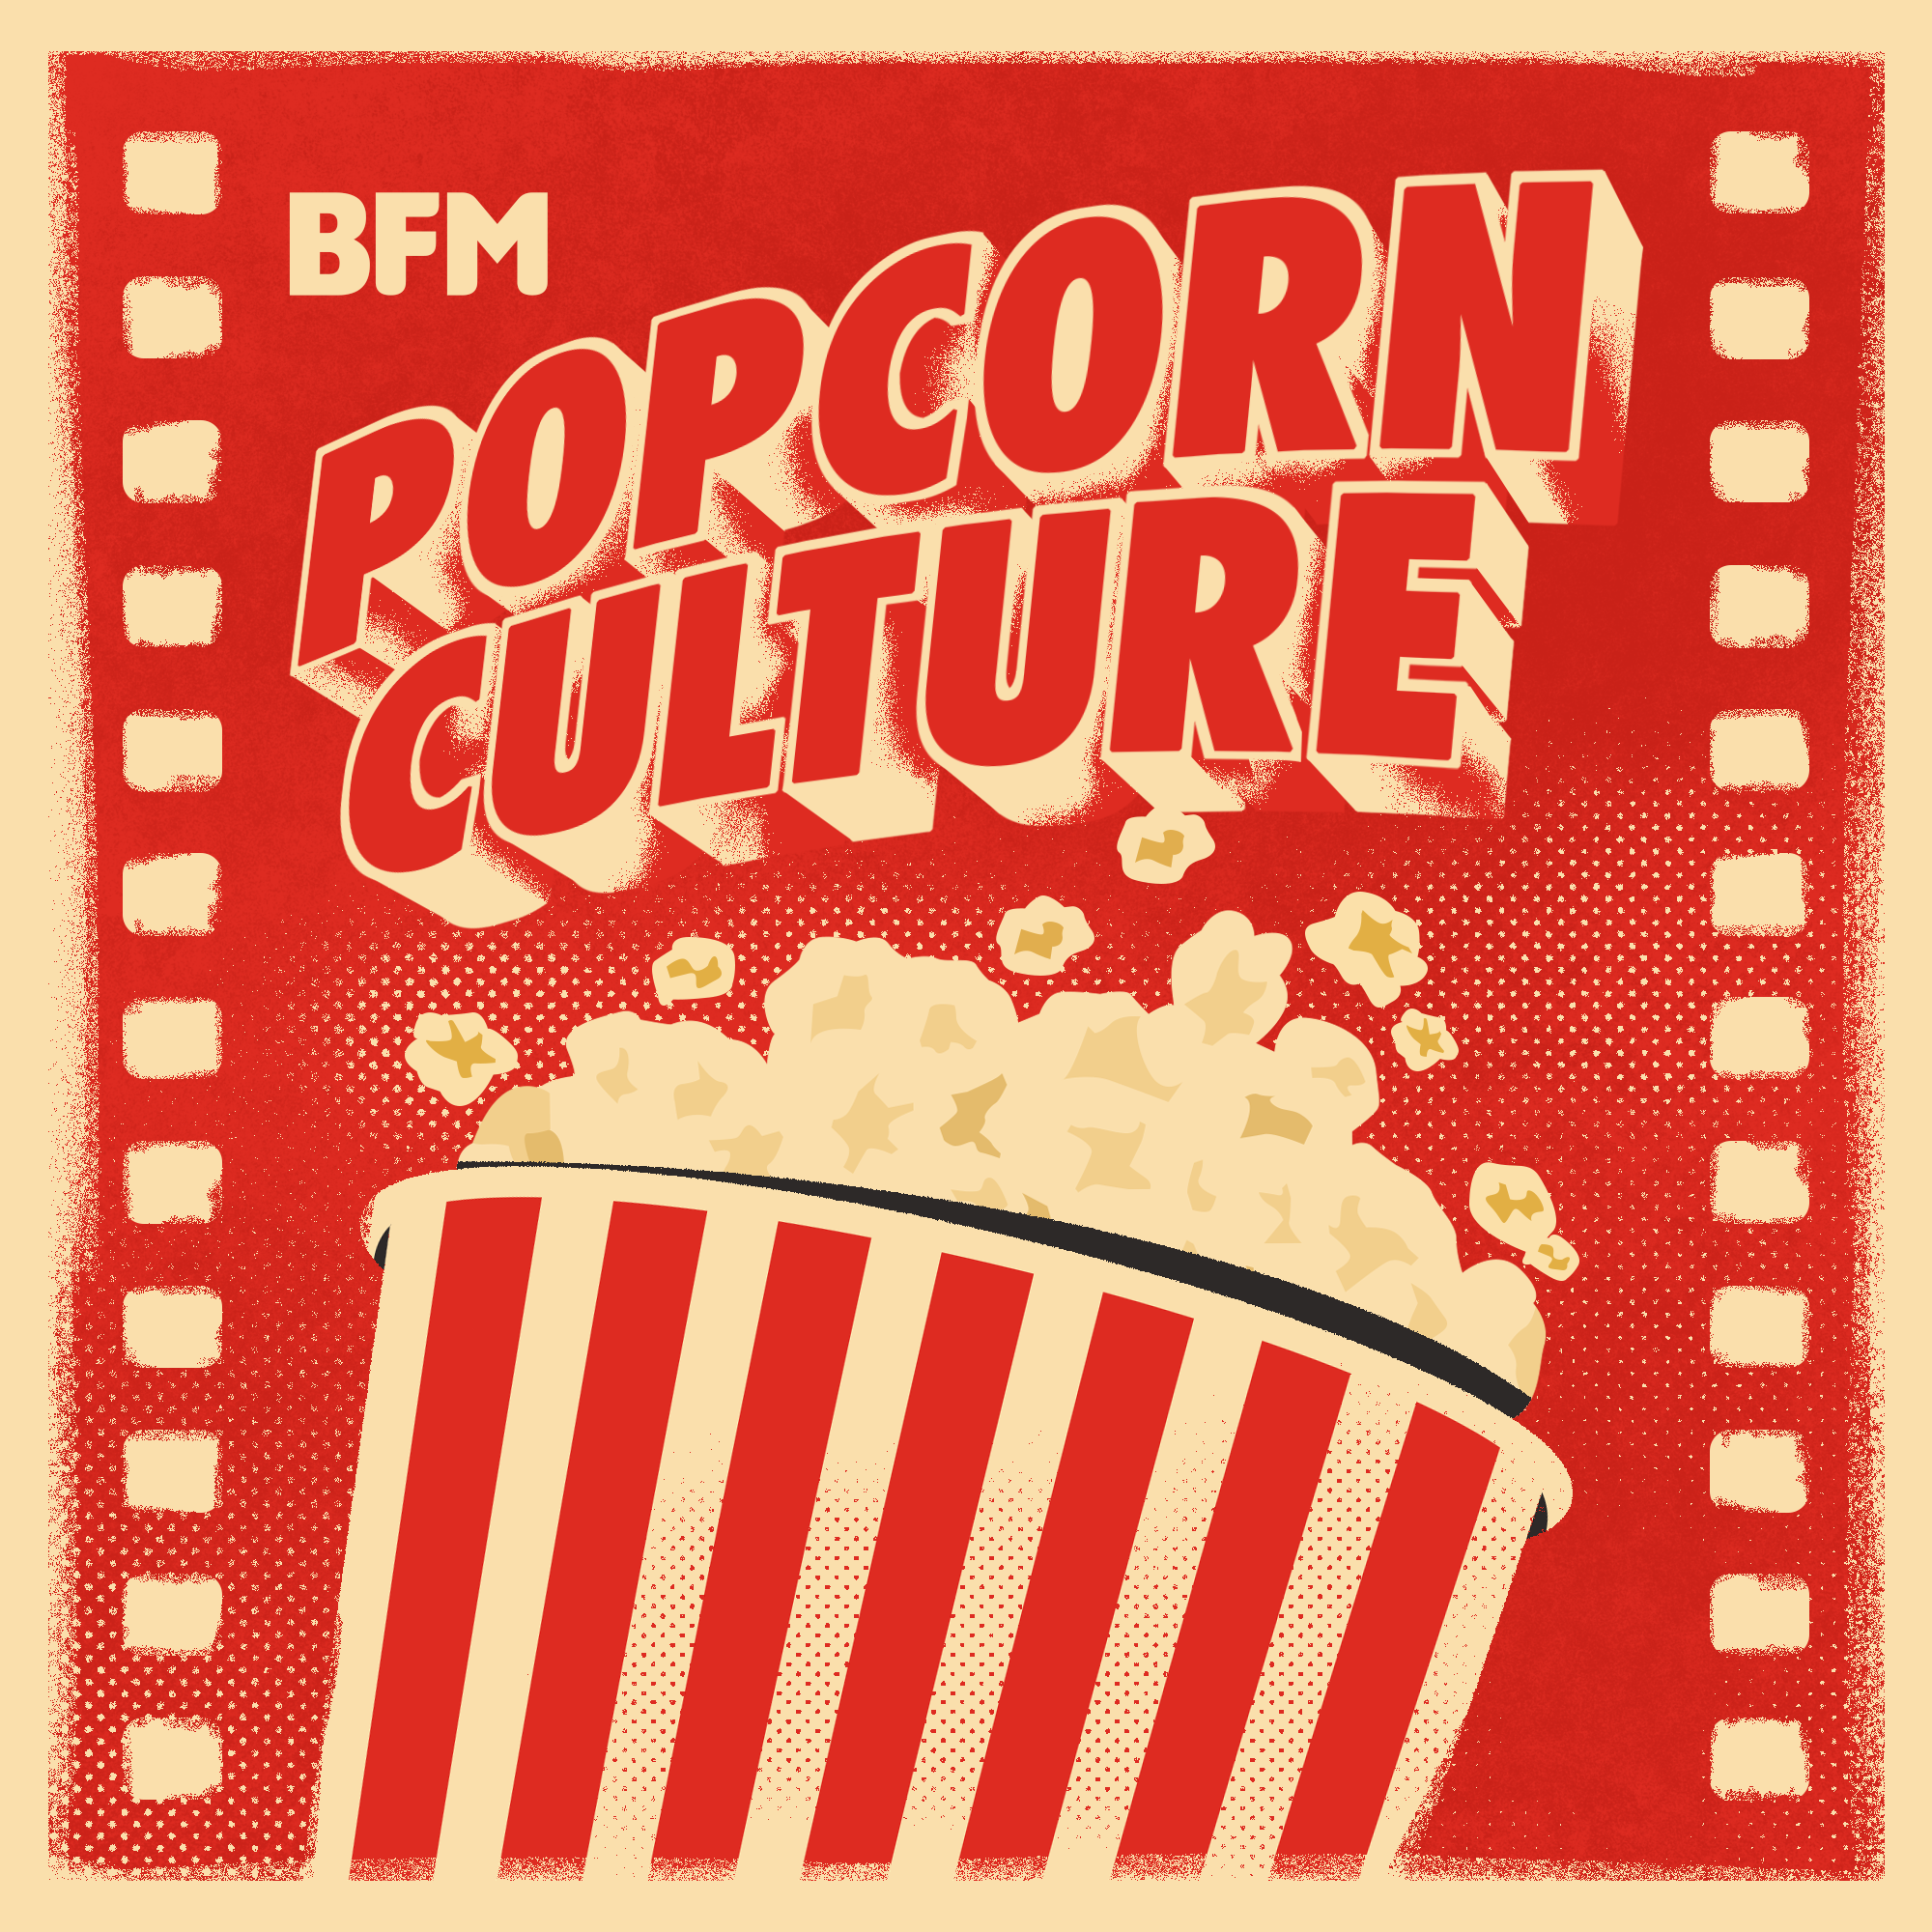 Popcorn Culture - Review: Fingernails